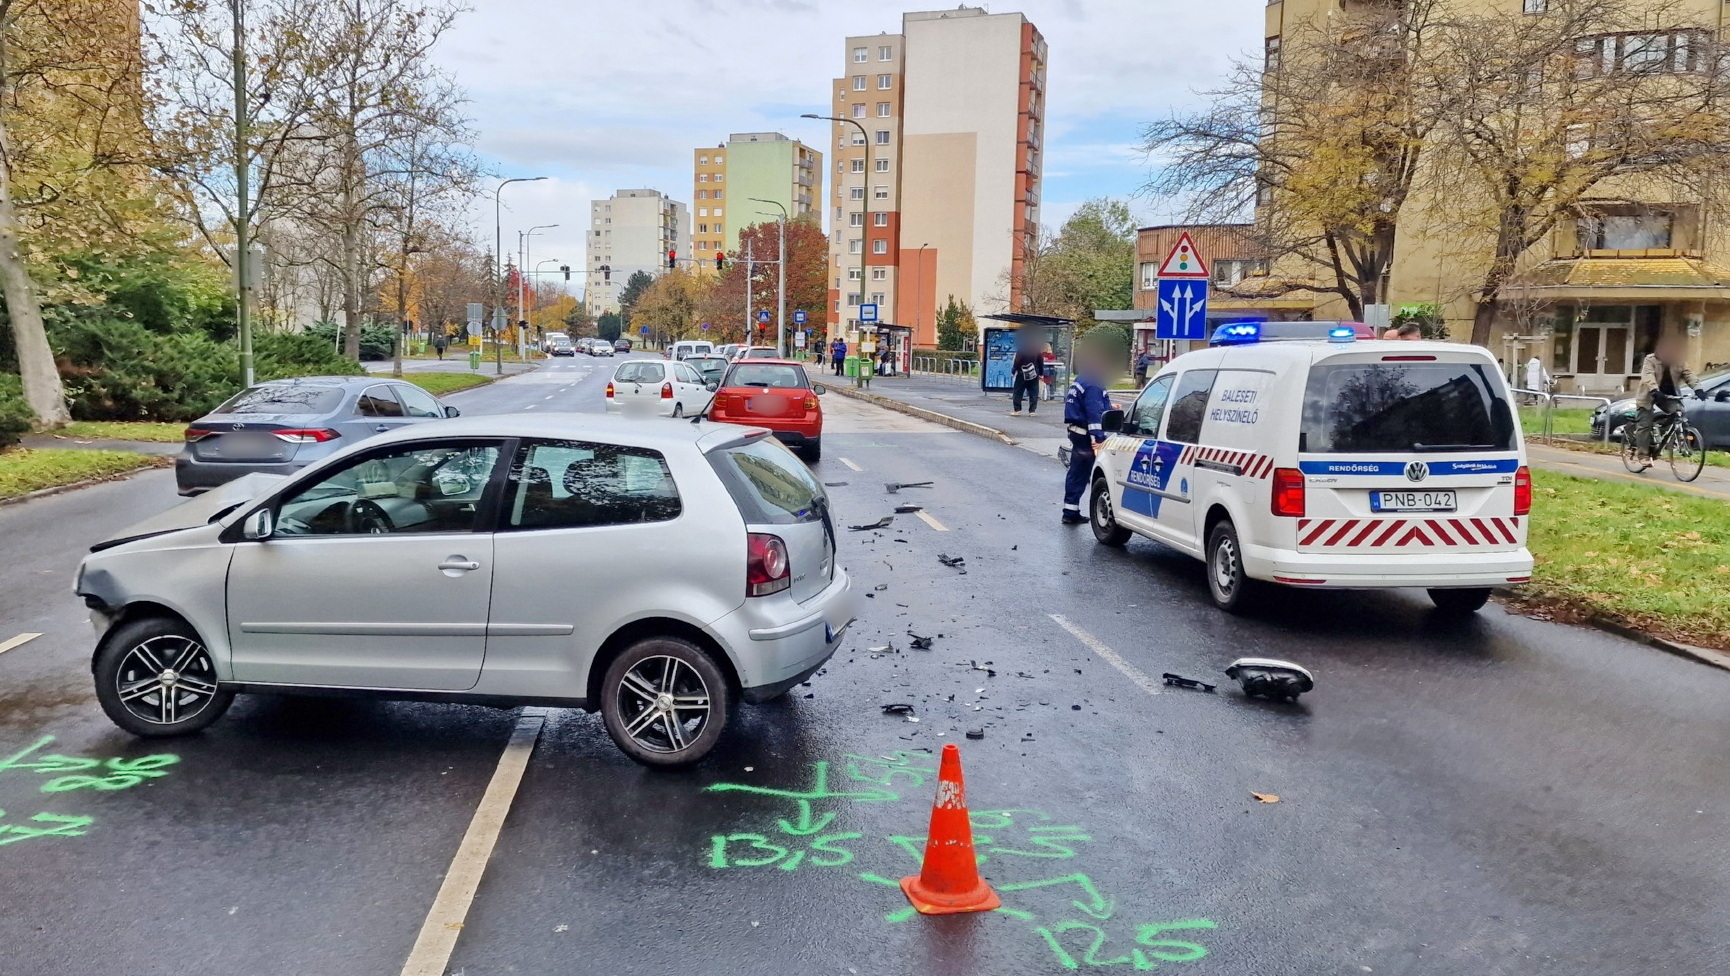 Friss vezetői engedéllyel okozott balesetet a VW vezetője - Suzukival ütközött egy tiltott balra kanyarodáskor